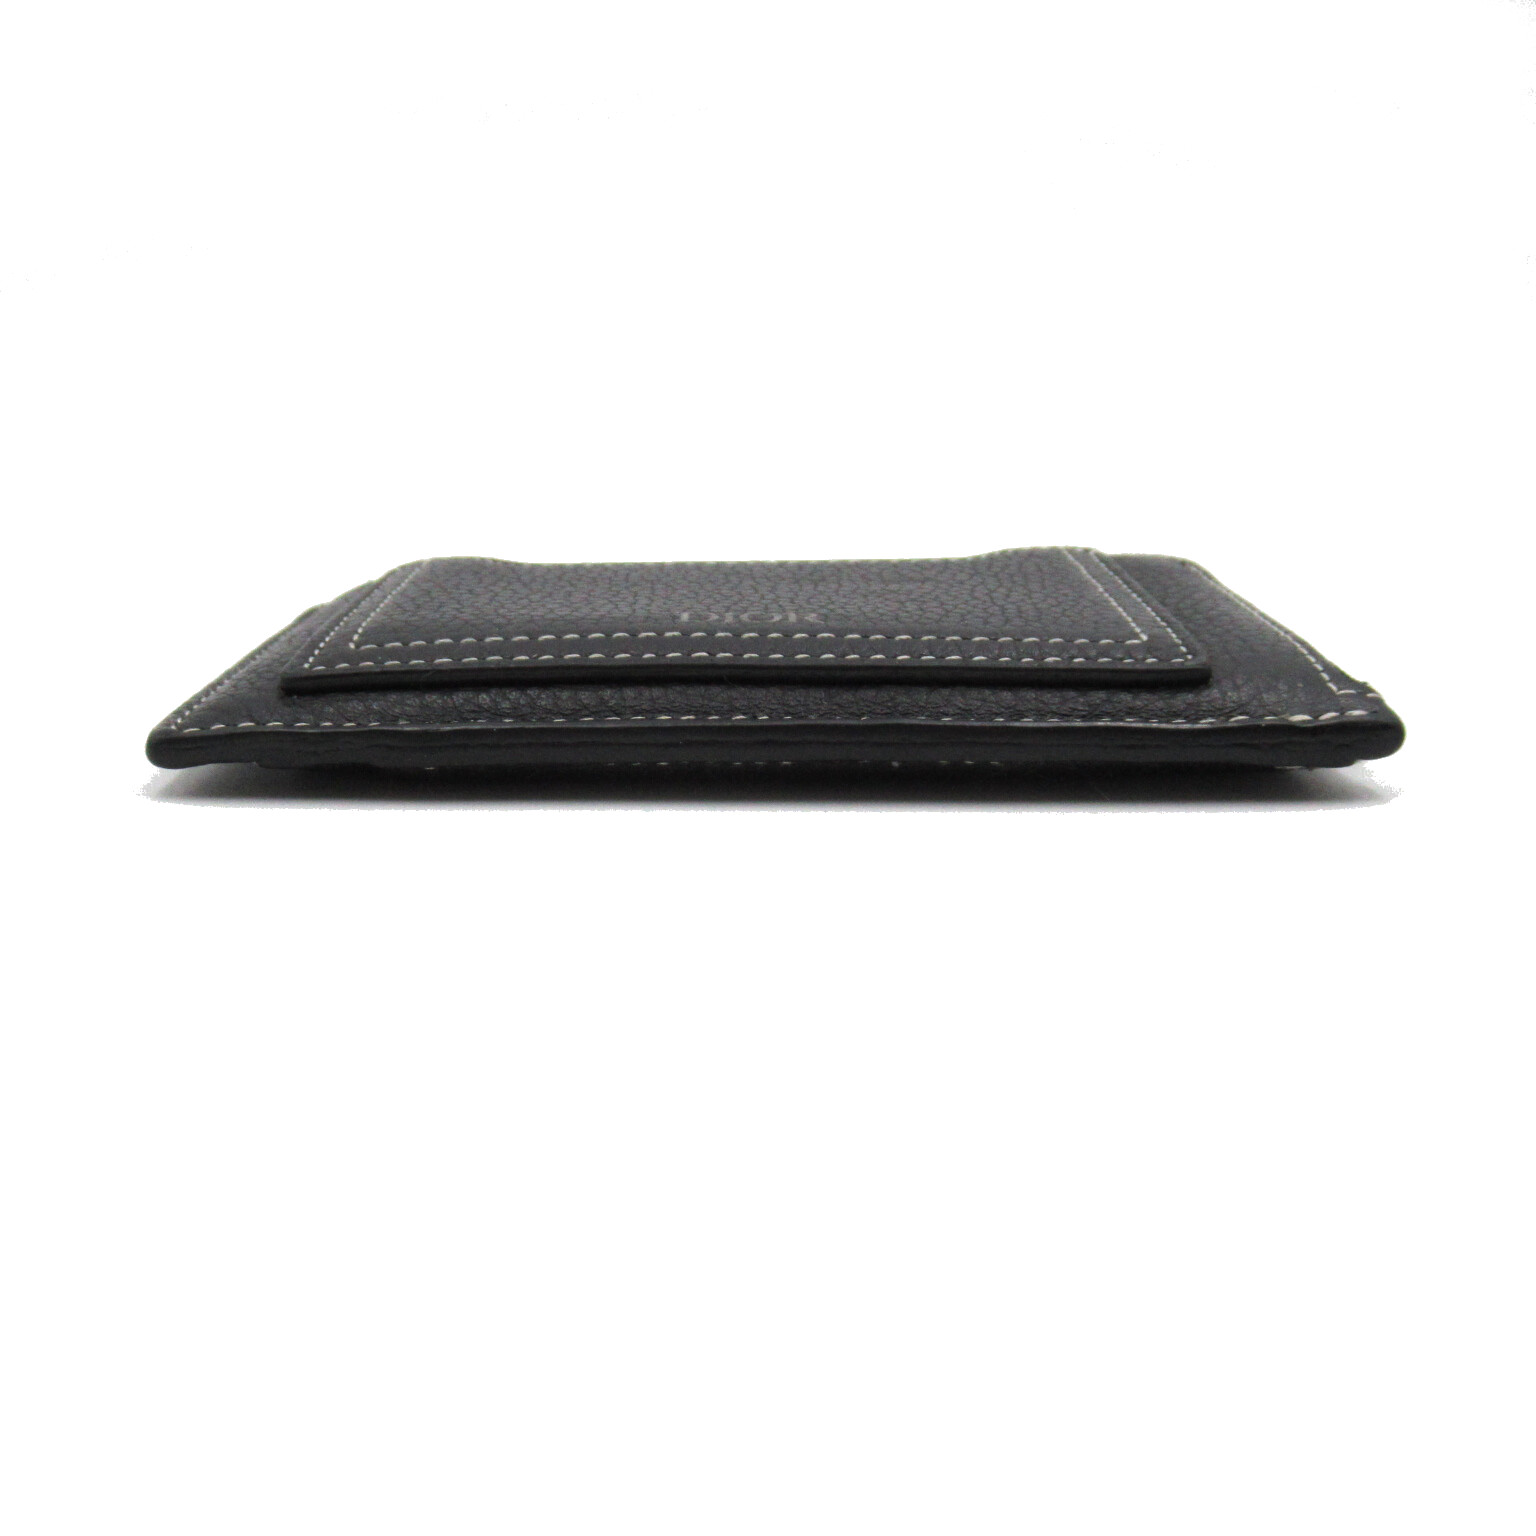 ディオール Dior コインケース 財布 レザー メンズ レディース ブラック系 コインケース 【中古】 | BRANDOFF TOKYO